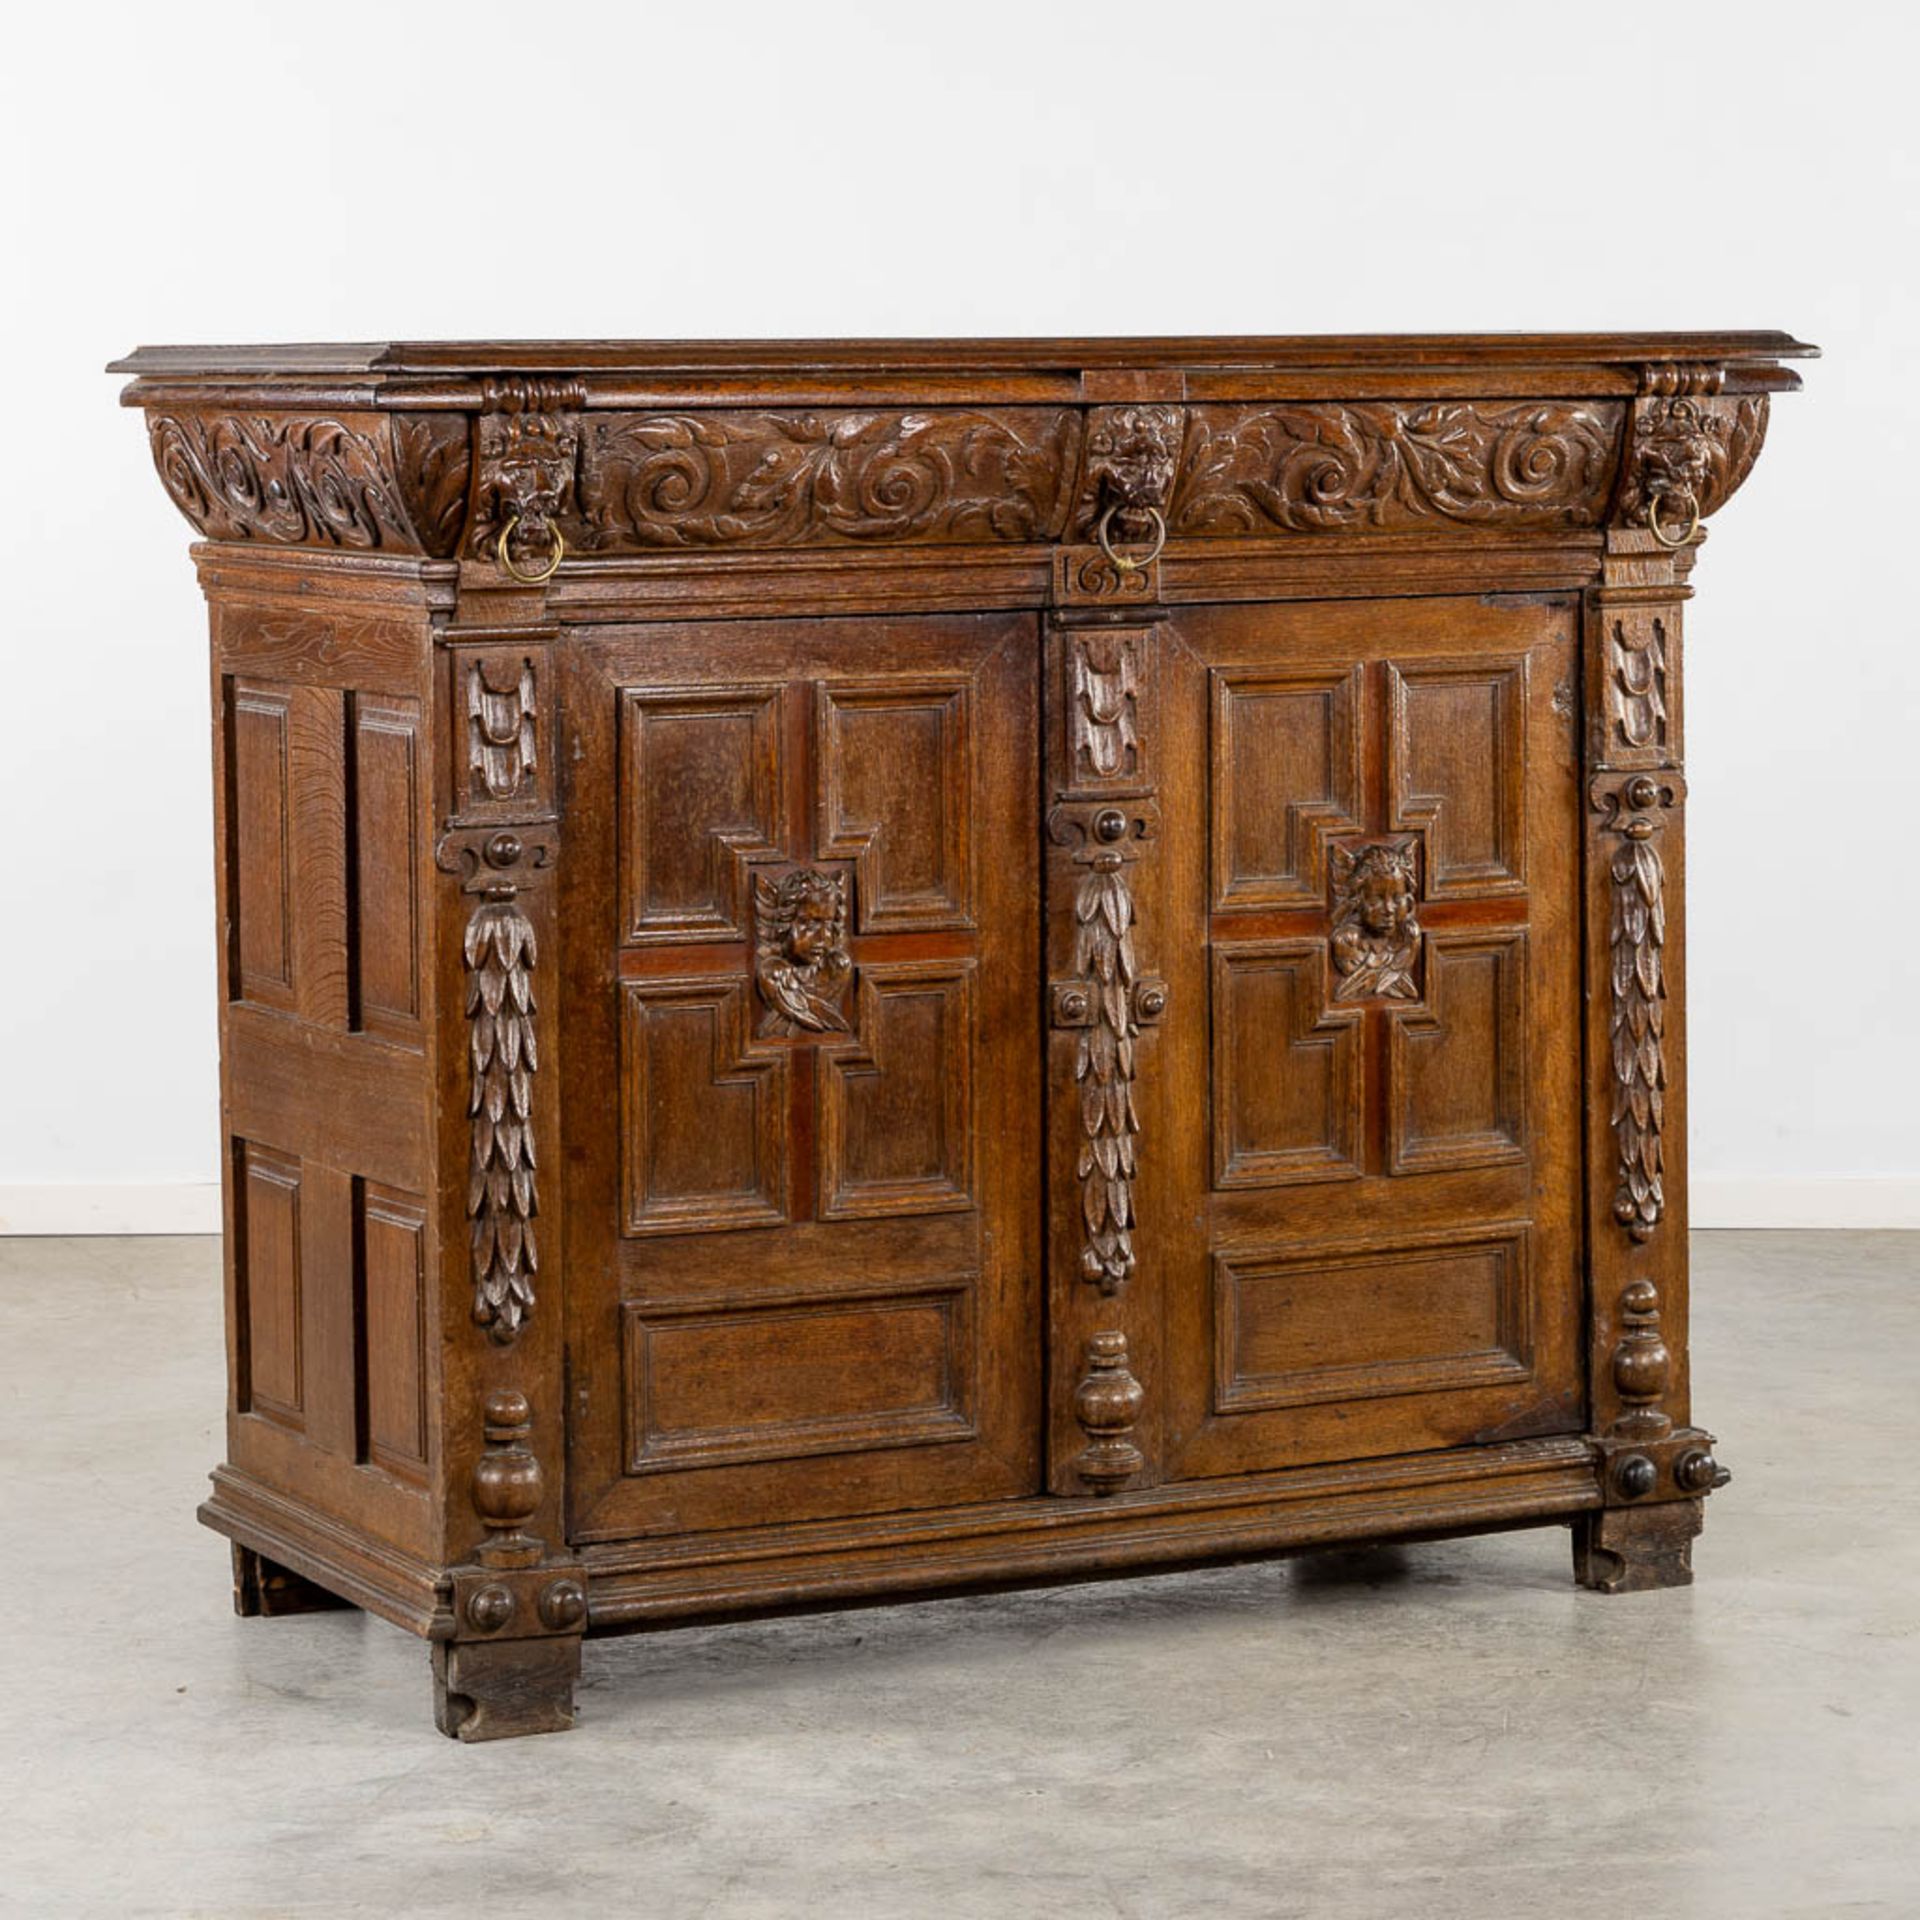 A cabinet, Flemish Renaissance, 17h C. (L:69 x W:158 x H:127 cm)